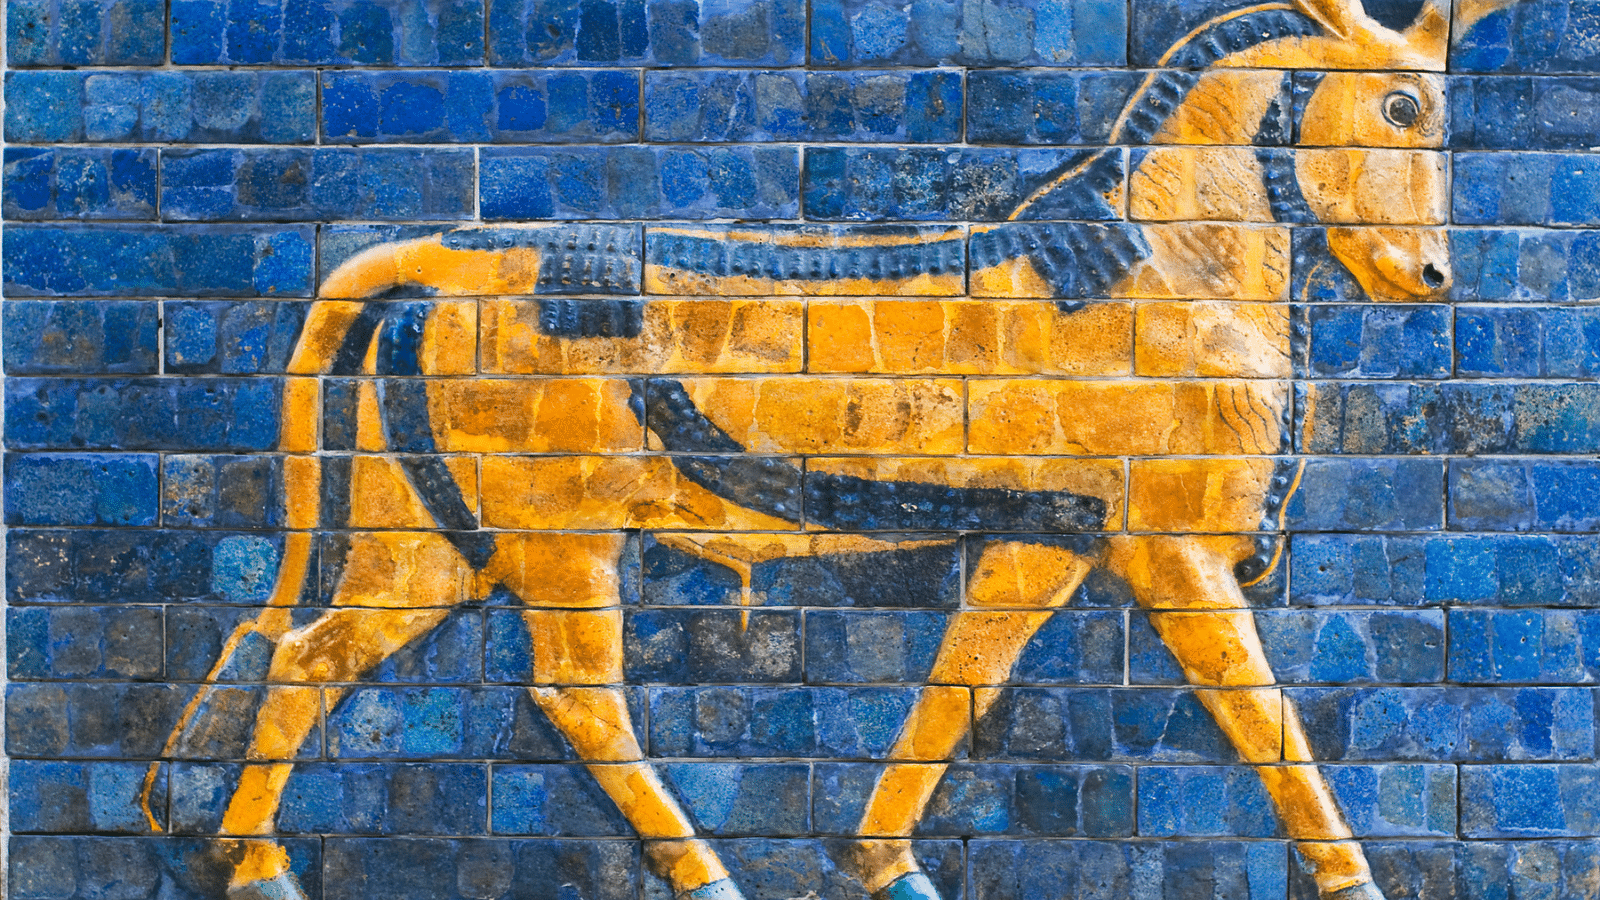 Golden calf mural on wall